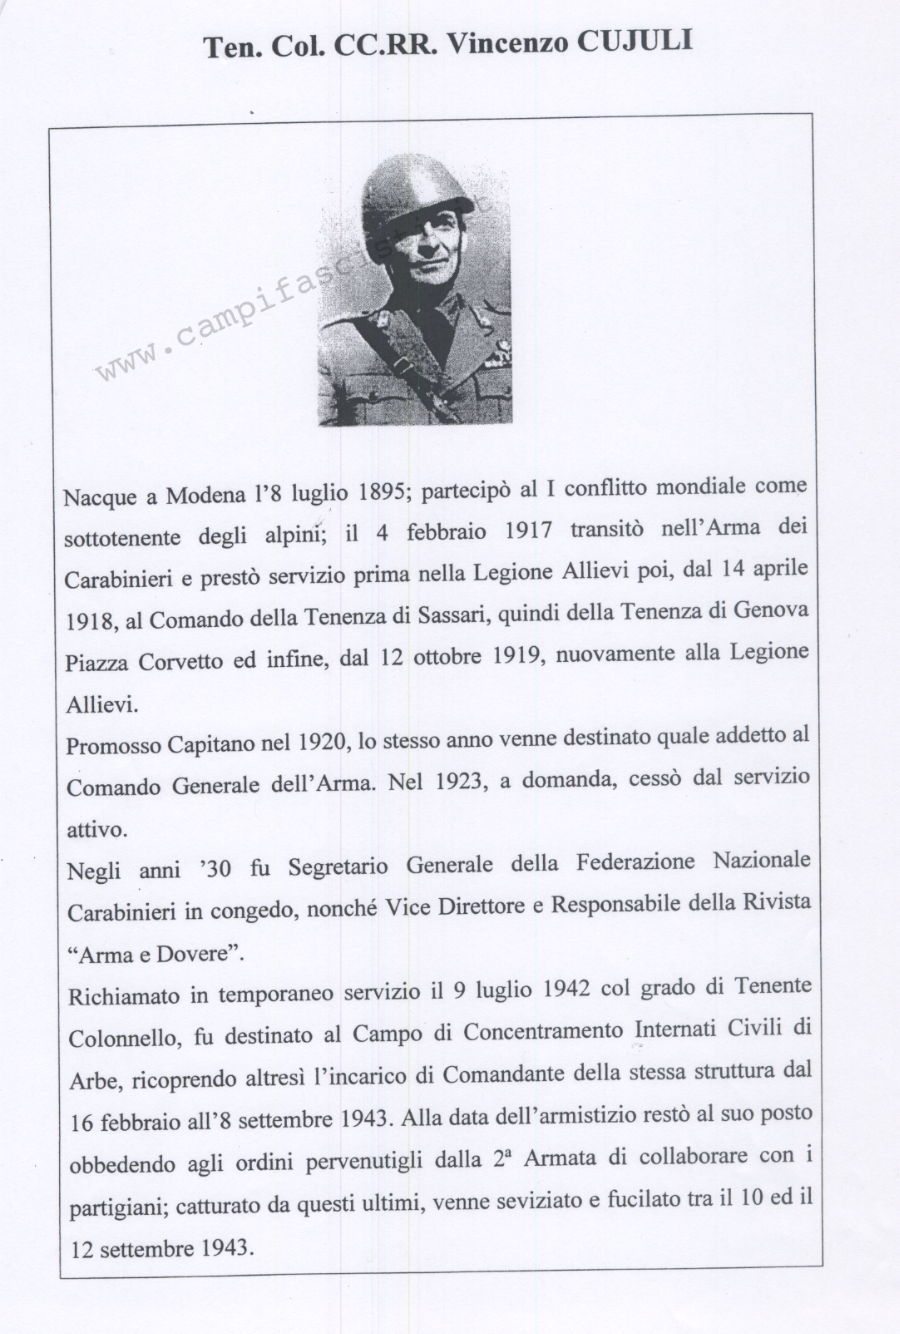 Scheda biografica del tenente colonnello Vincenzo Cujuli, comandante del campo di concentramento di Rab